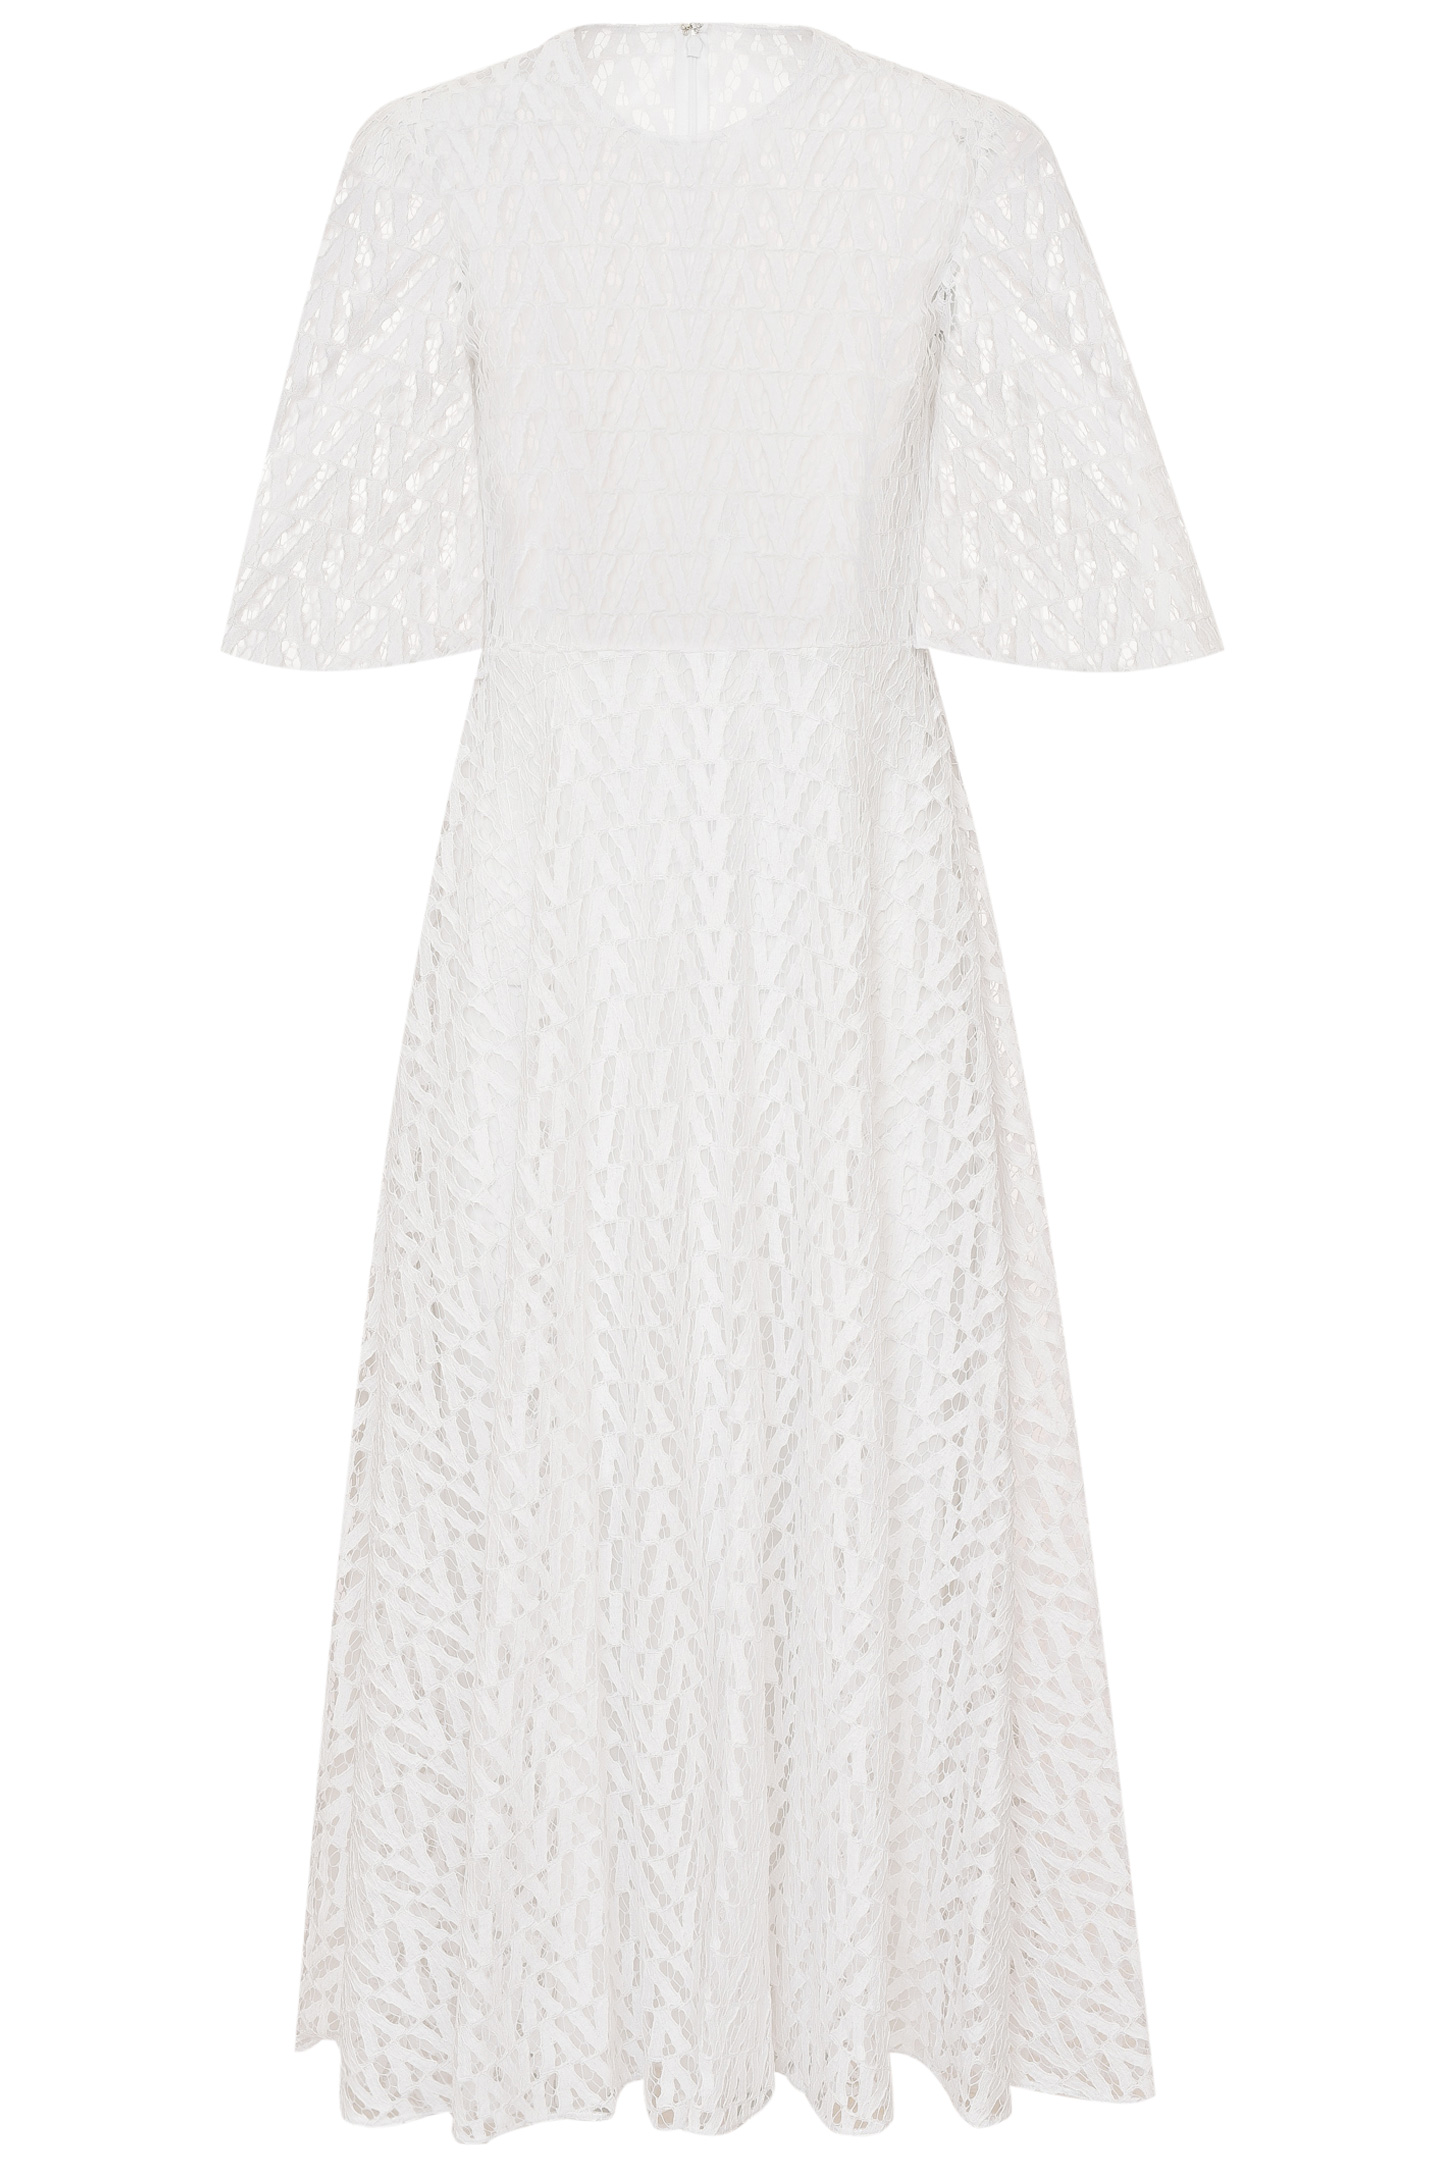 Платье VALENTINO PAP XB3VAYE56W1, цвет: Белый, Женский